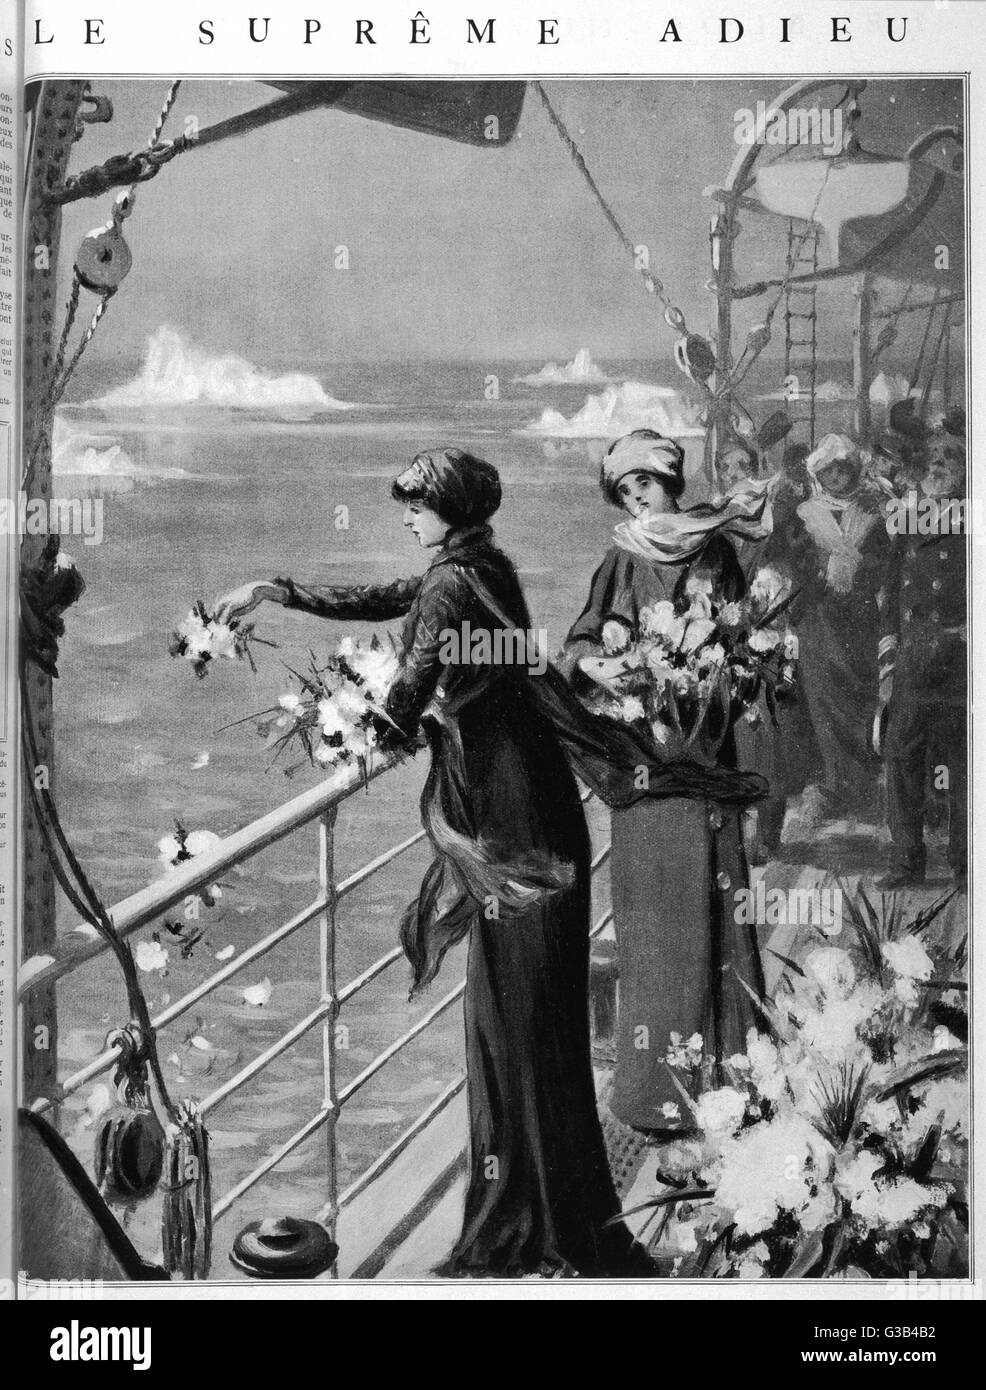 La Sra. Henrietta Loring, cuyo marido murió ahogado en el naufragio del 'Titanic', viaja al sitio y lanzan flores al mar como su último adiós Fecha: 1912. Foto de stock